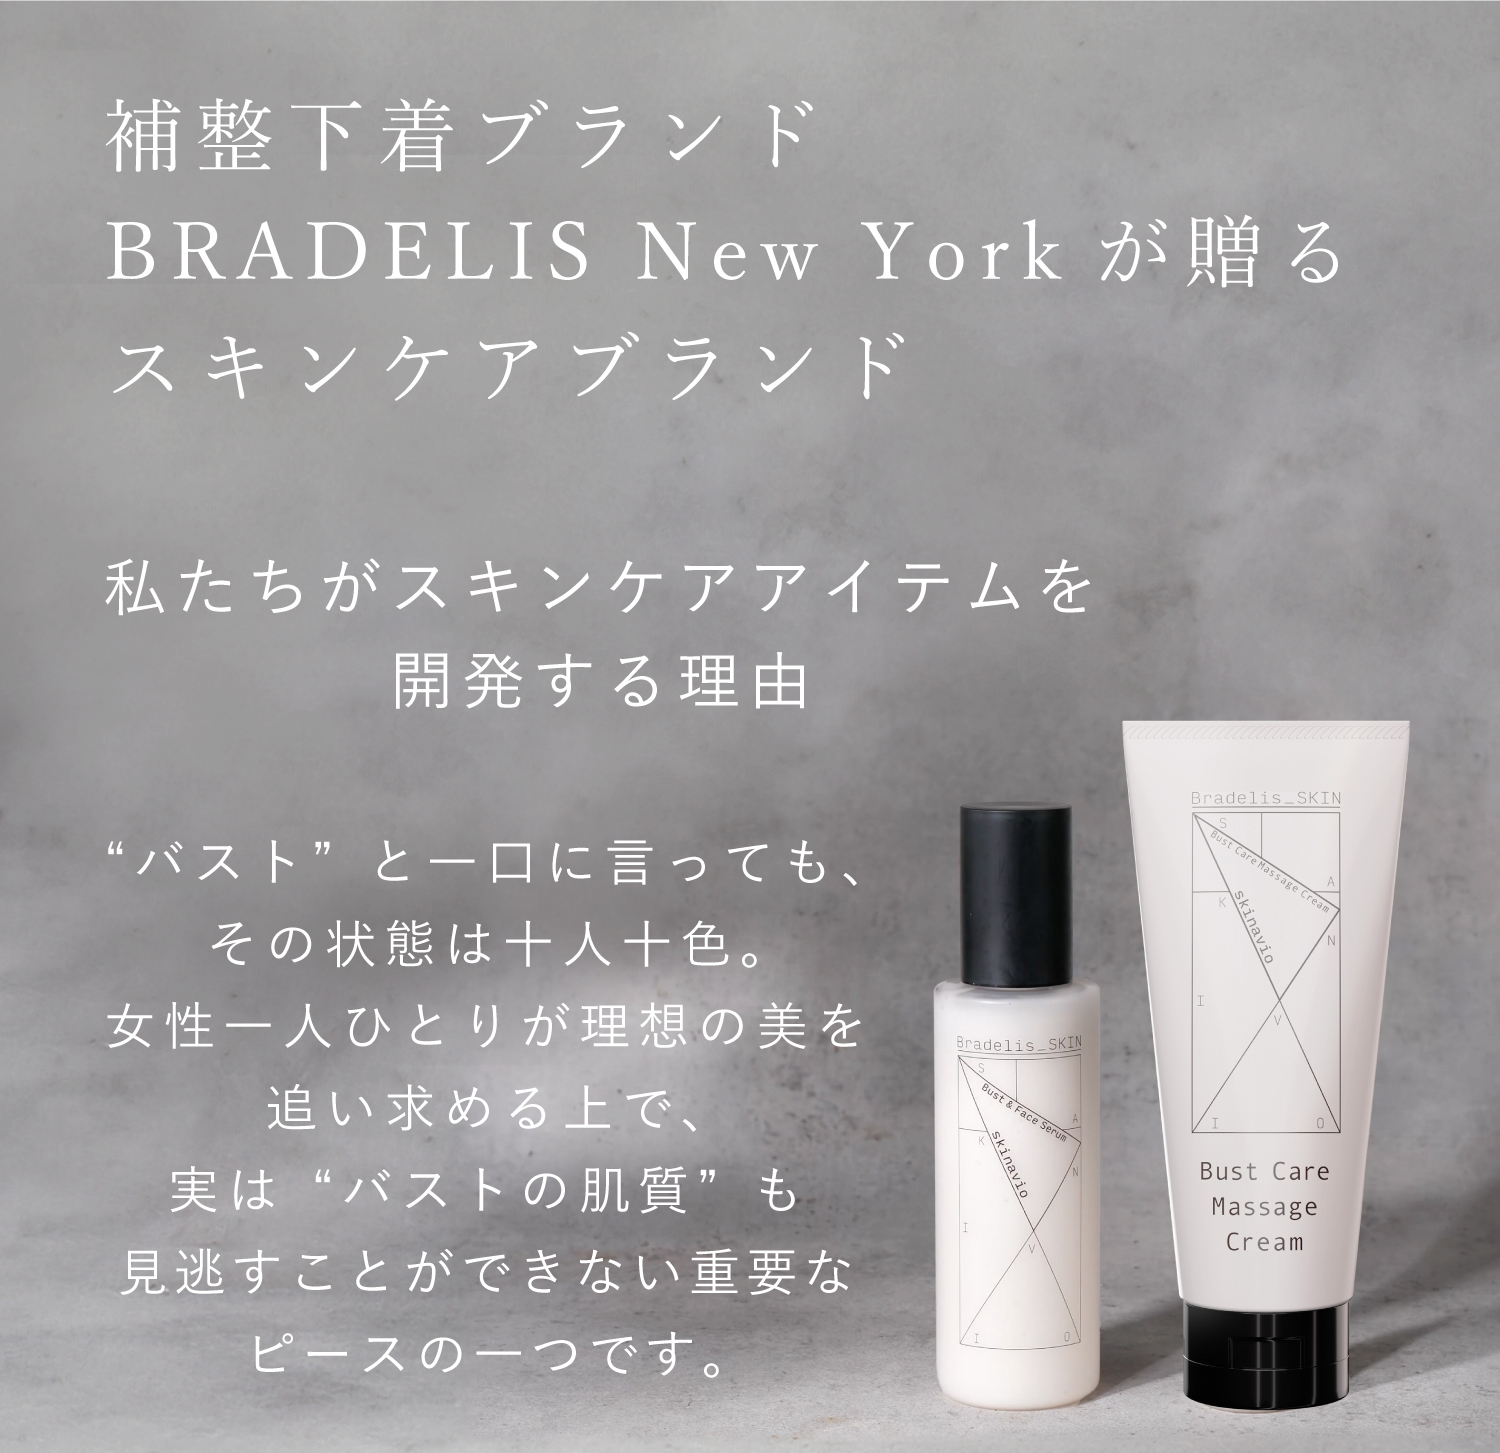 補整下着ブランド「BRADELIS New York」が贈るスキンケアブランド